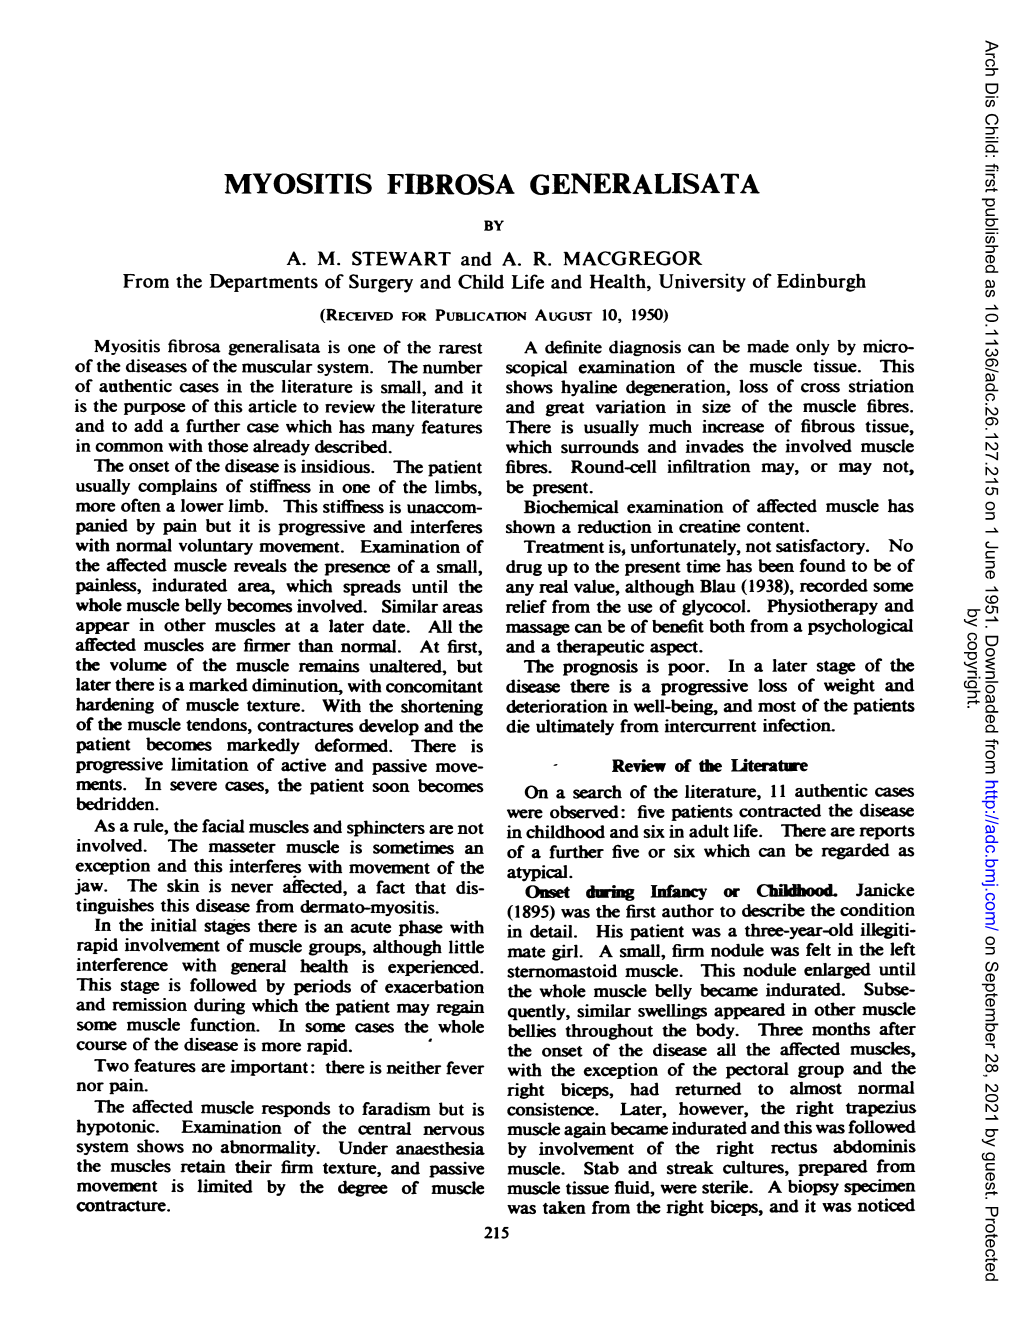 Myositis Fibrosa Generalisata by A